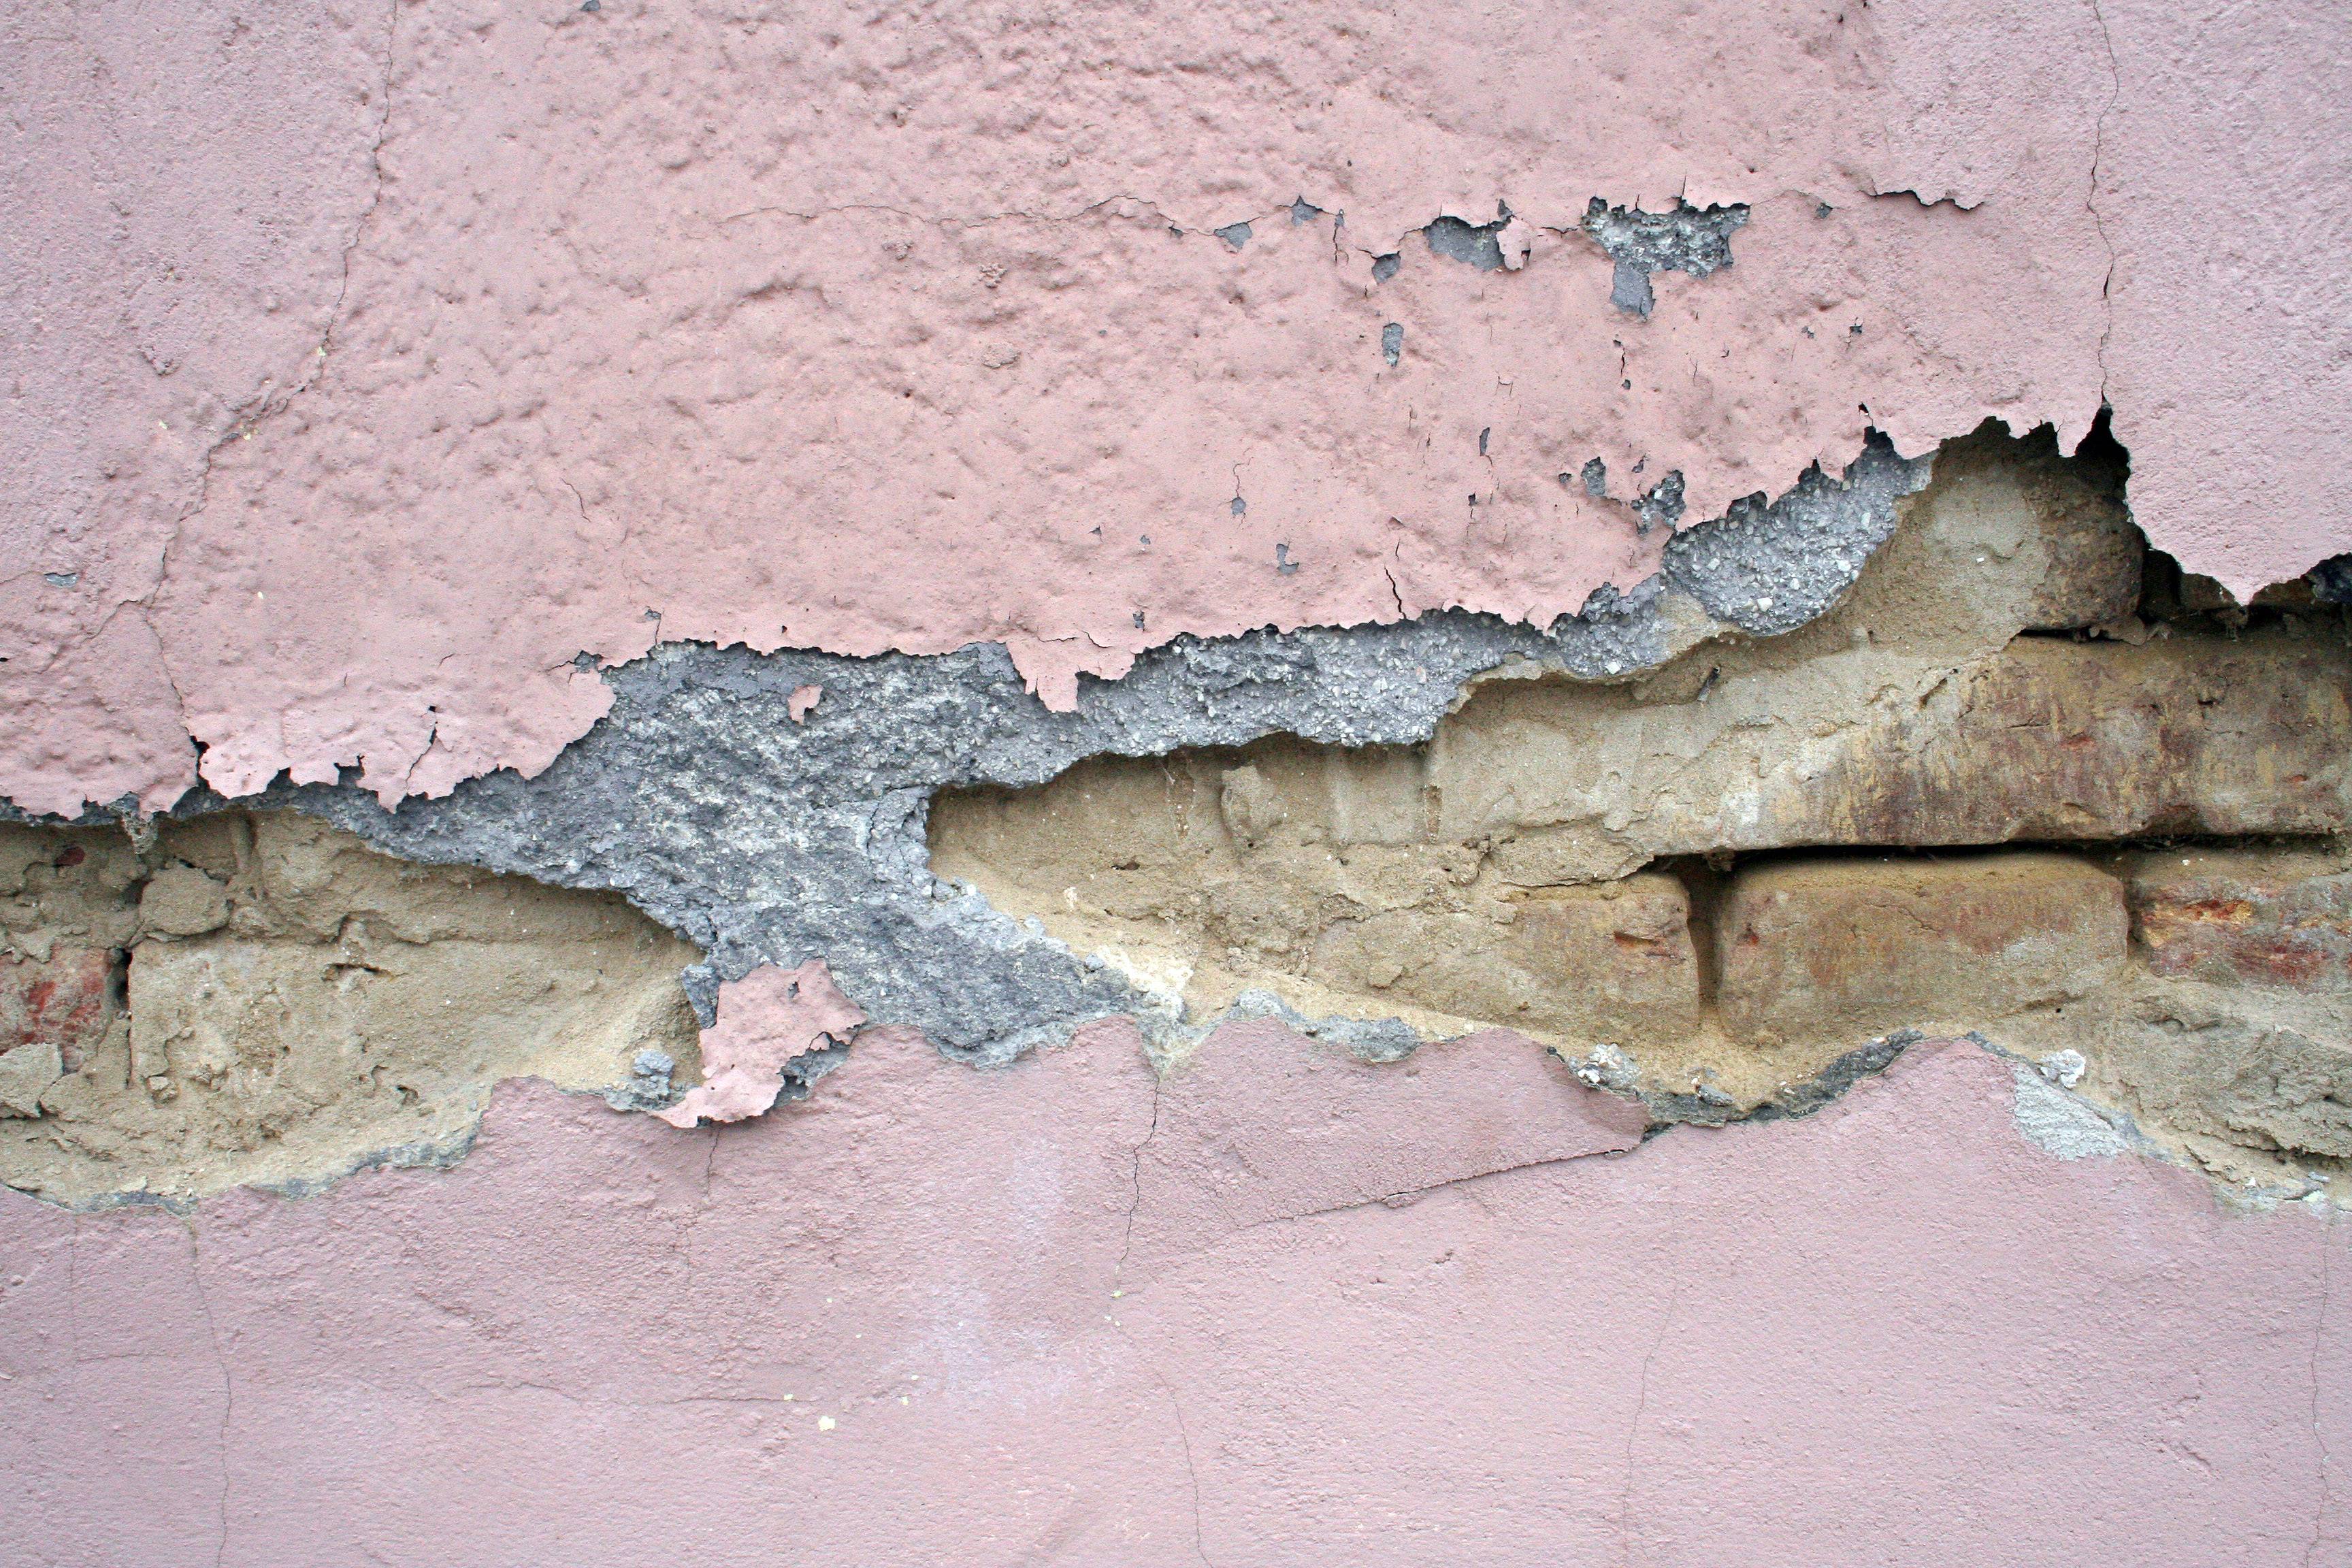 Трескается штукатурка: как заделать дыры и щели на стене и потолке?